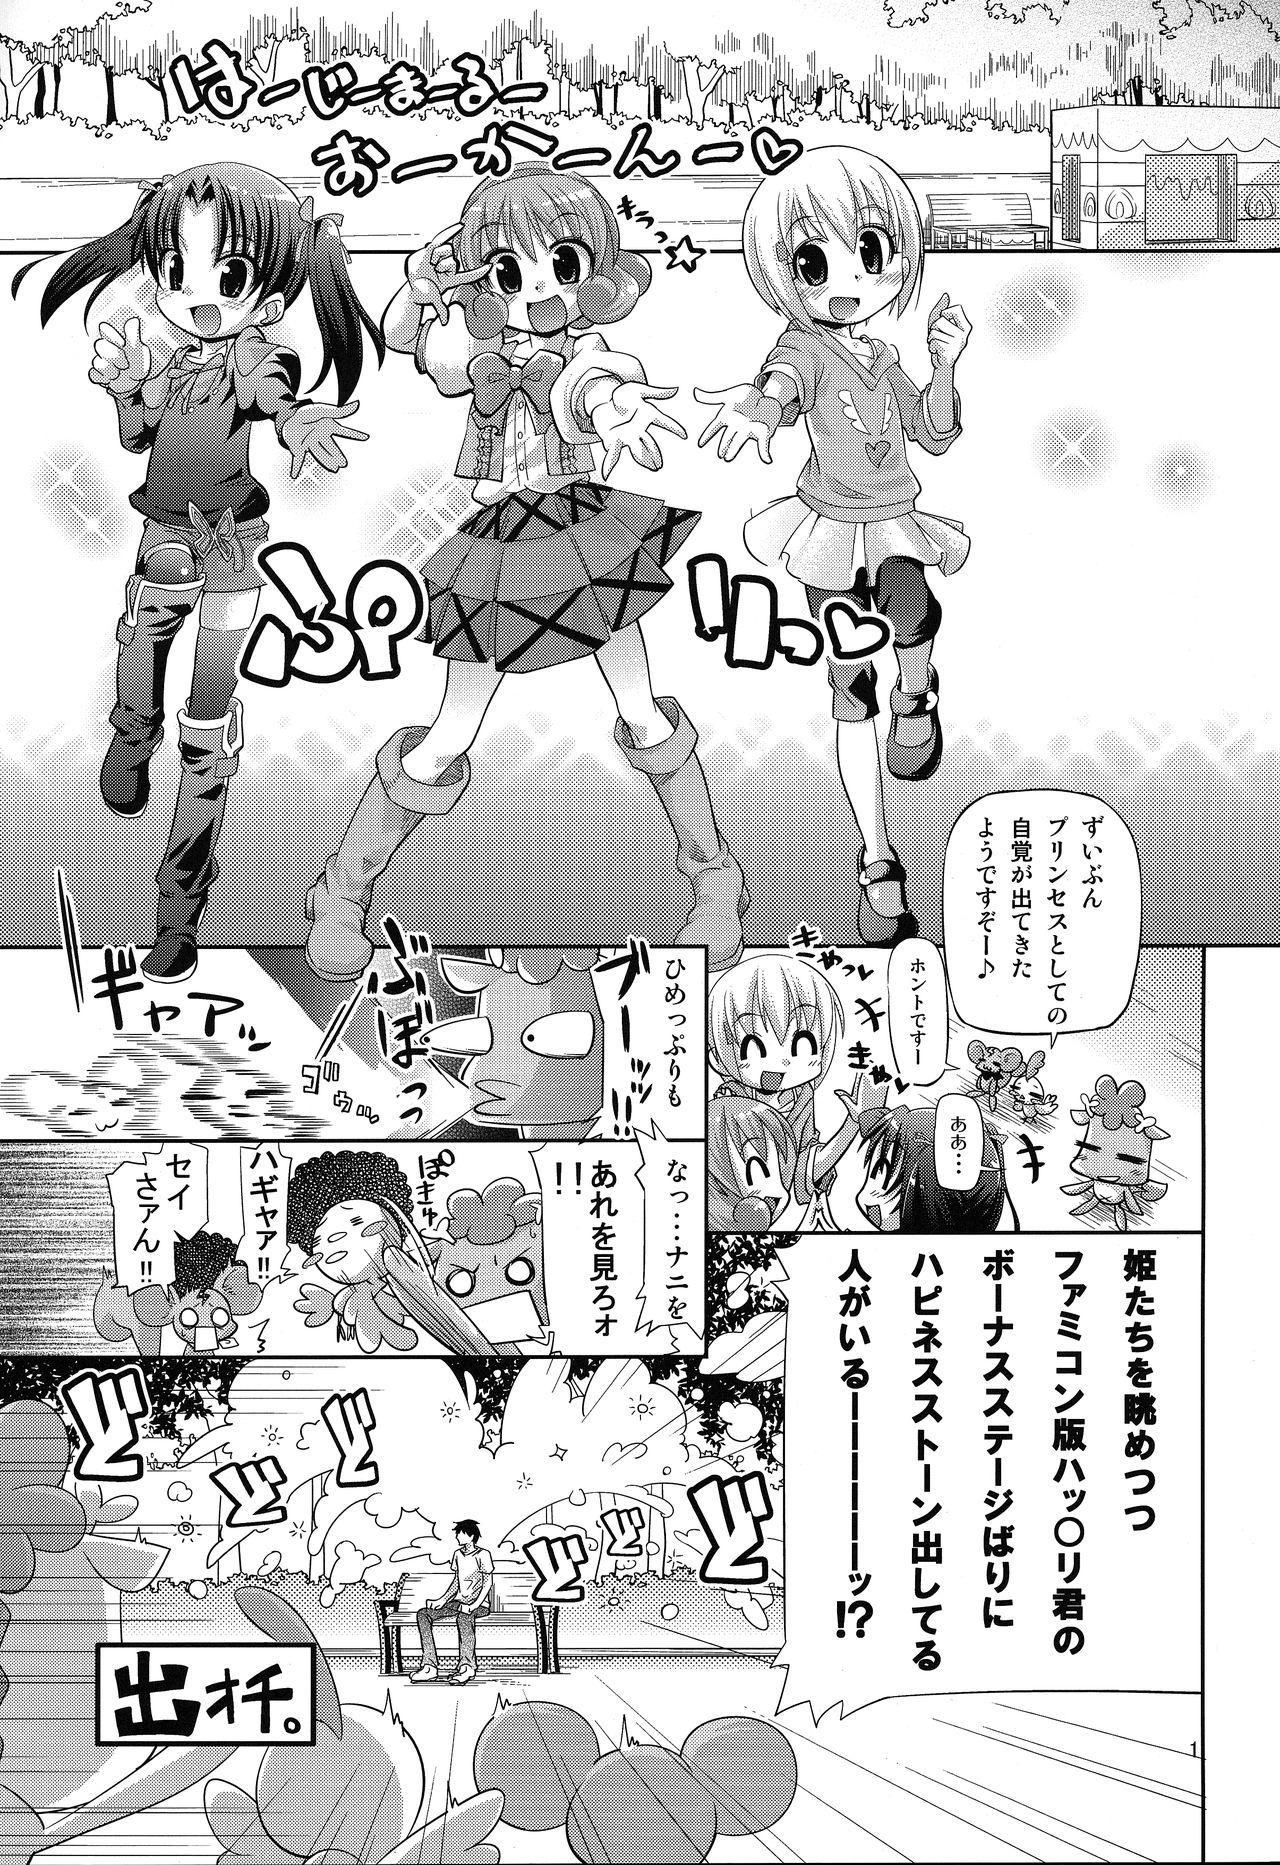 Amateur Xxx 無限ハピネストーン増殖withoutひめチェン - Hime chen otogi chikku idol lilpri Jizz - Page 2